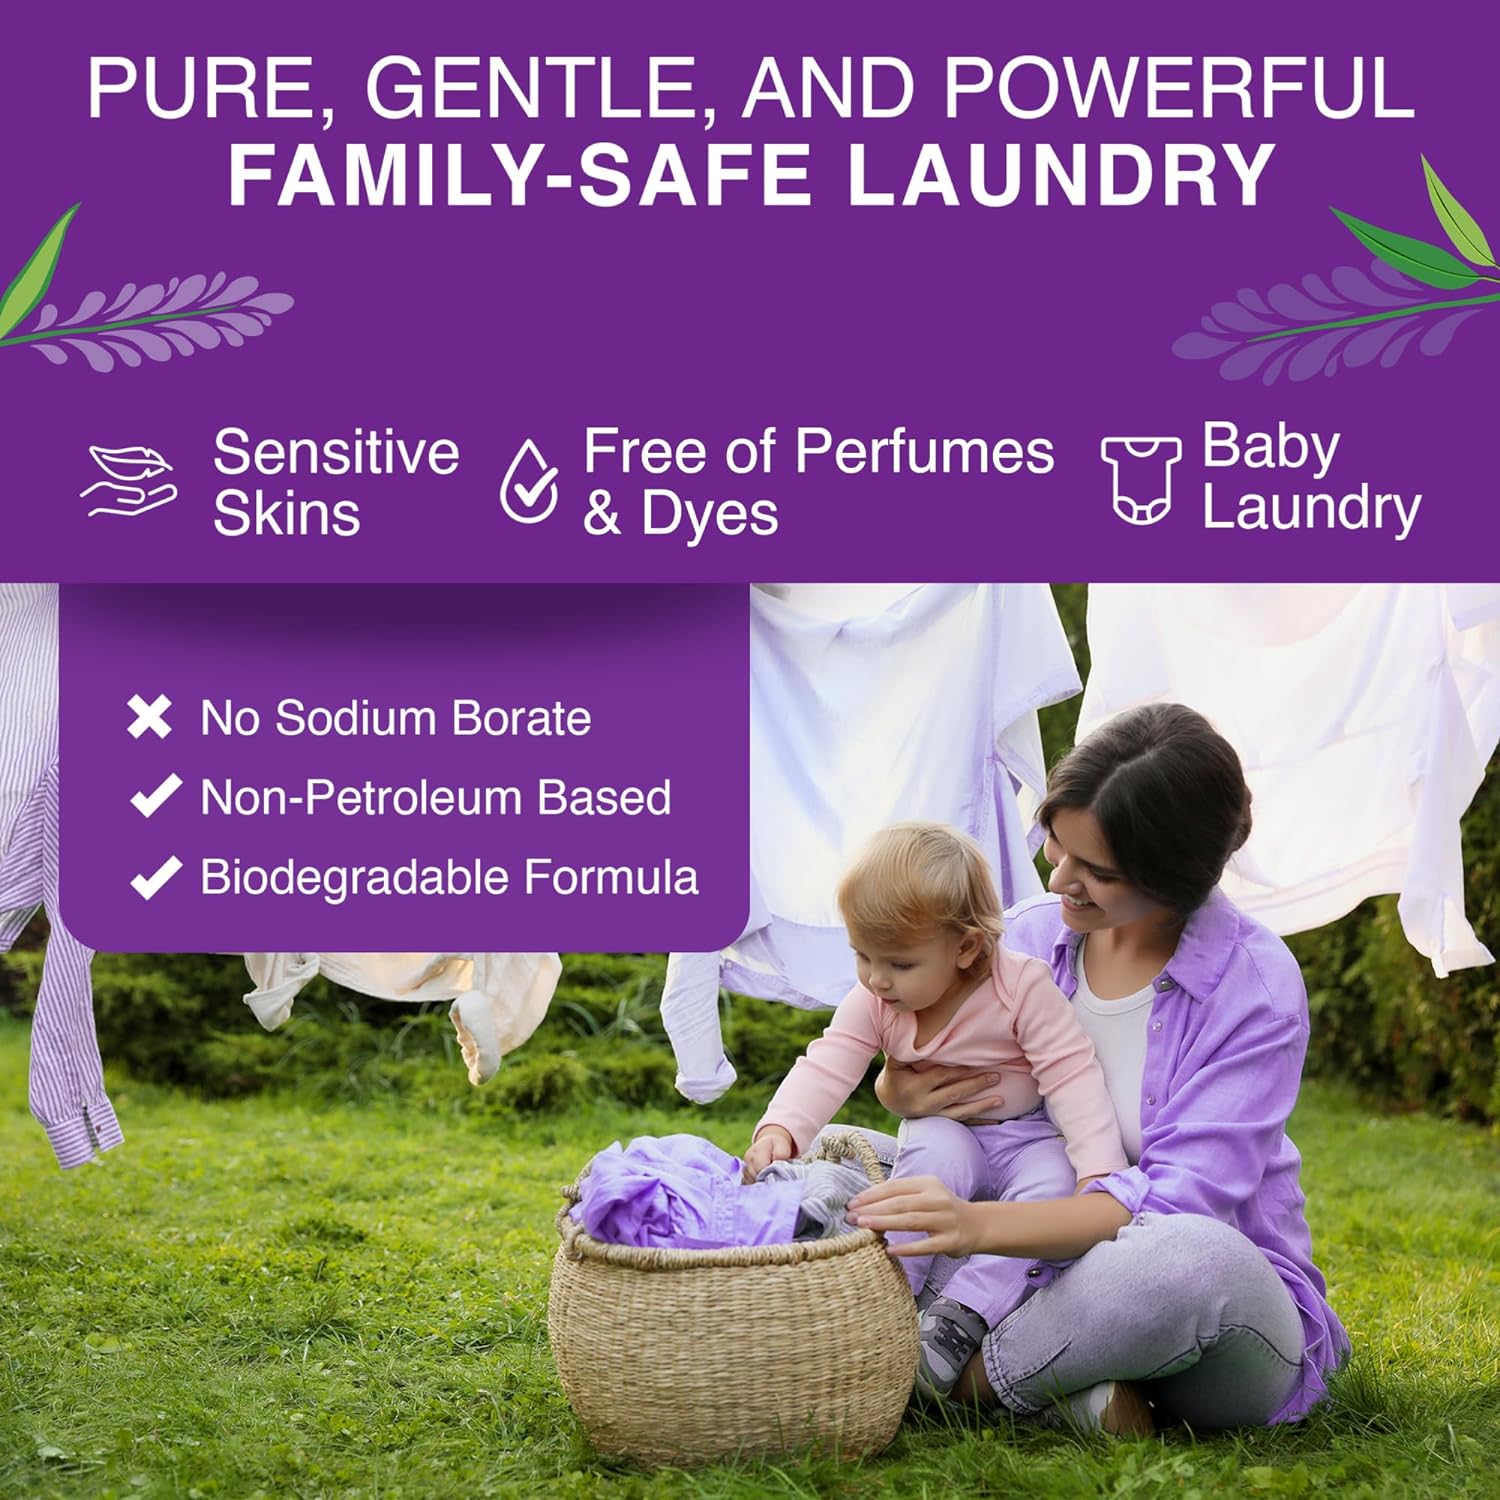 Fresh Laundry Duo | Laundry Powder, Room & Linen Spray